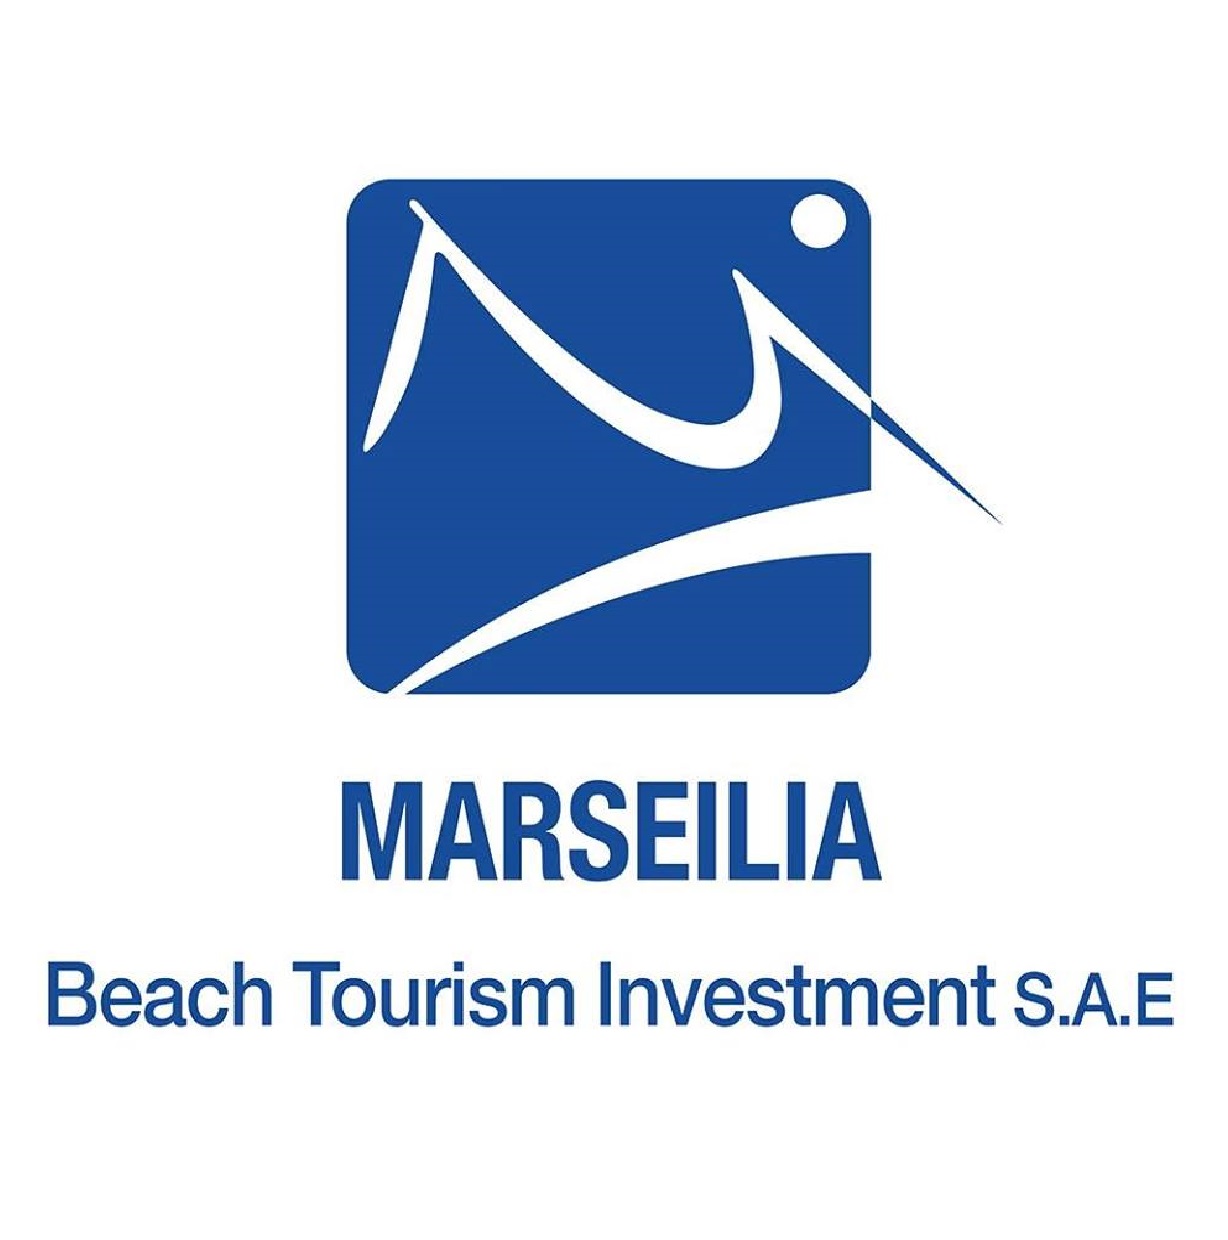 Marseilia Beach